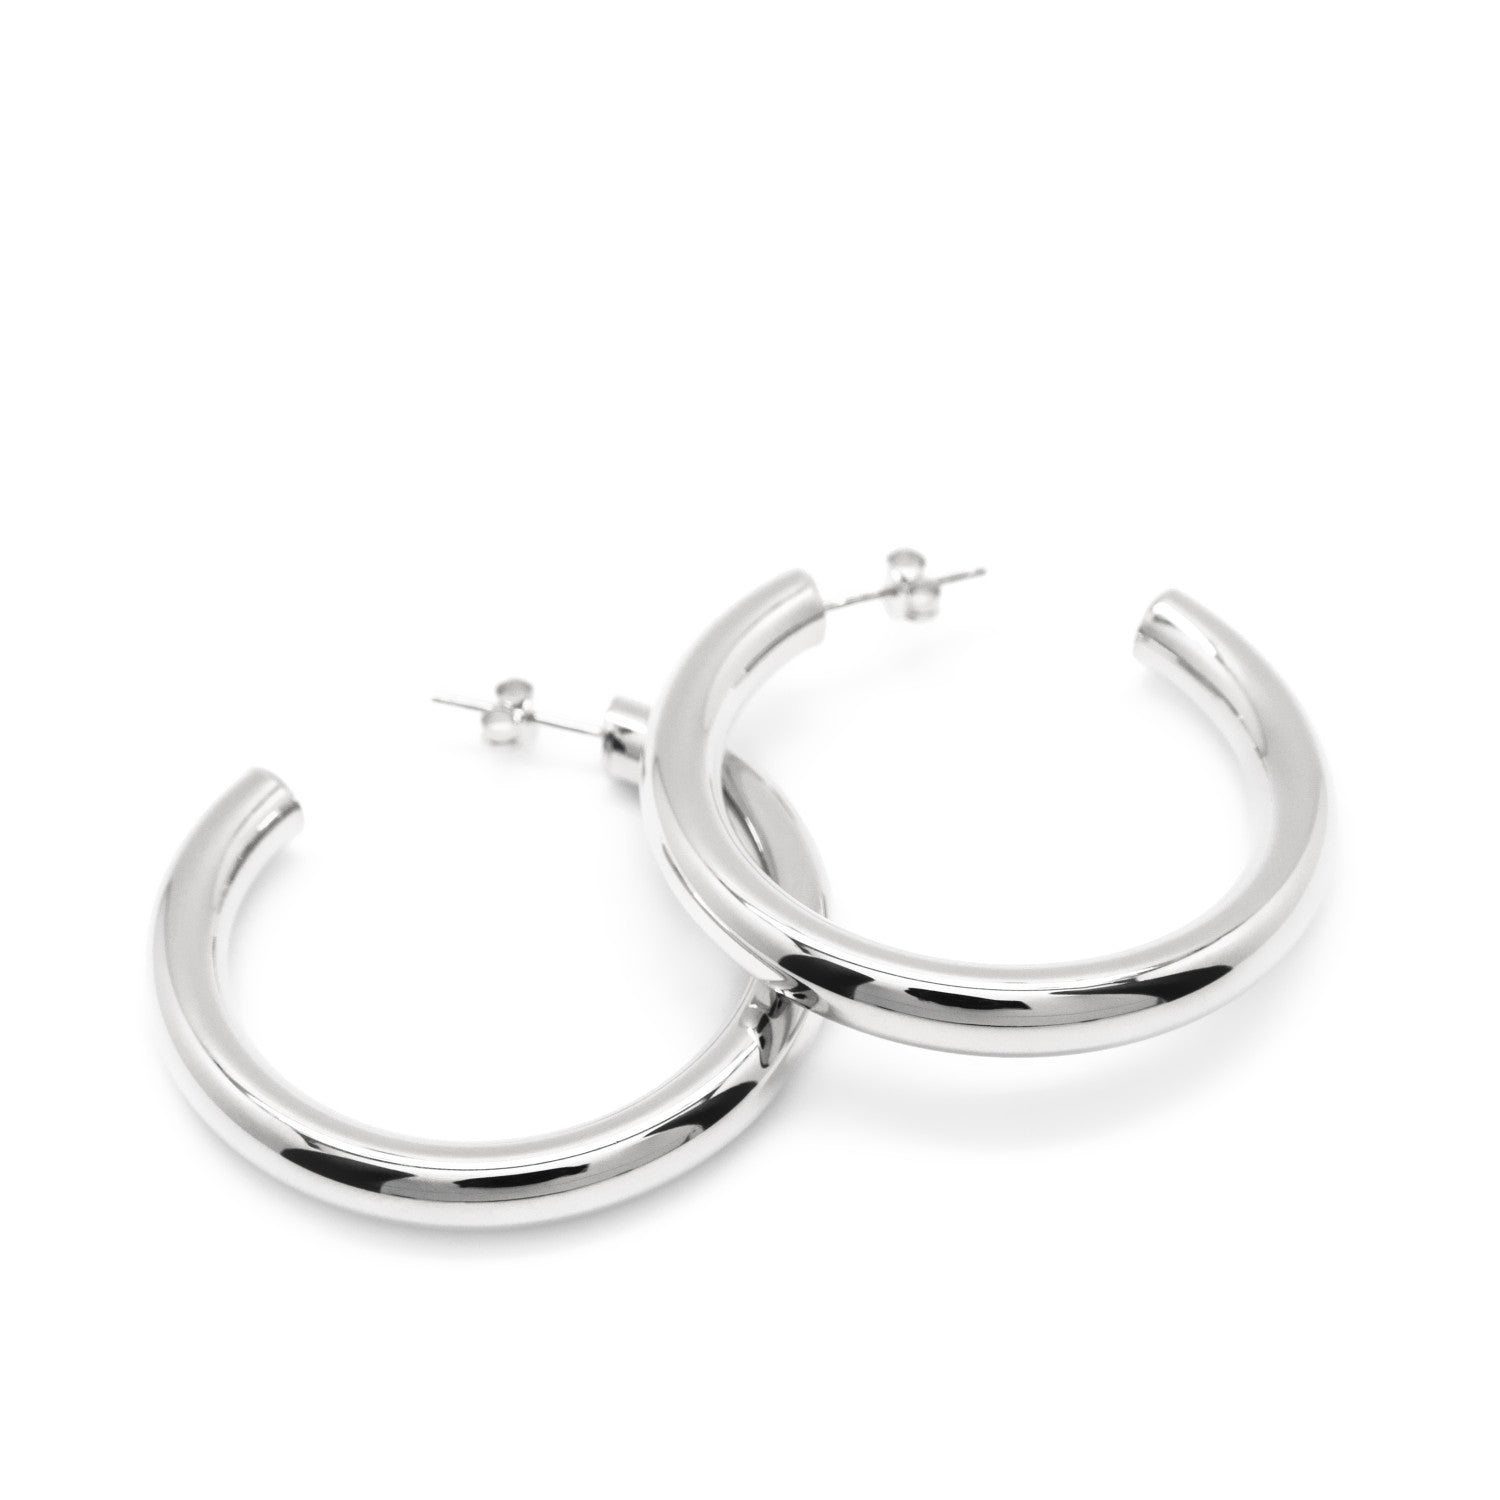 Earrings - Large silver hoop earrings with semi-open tube design